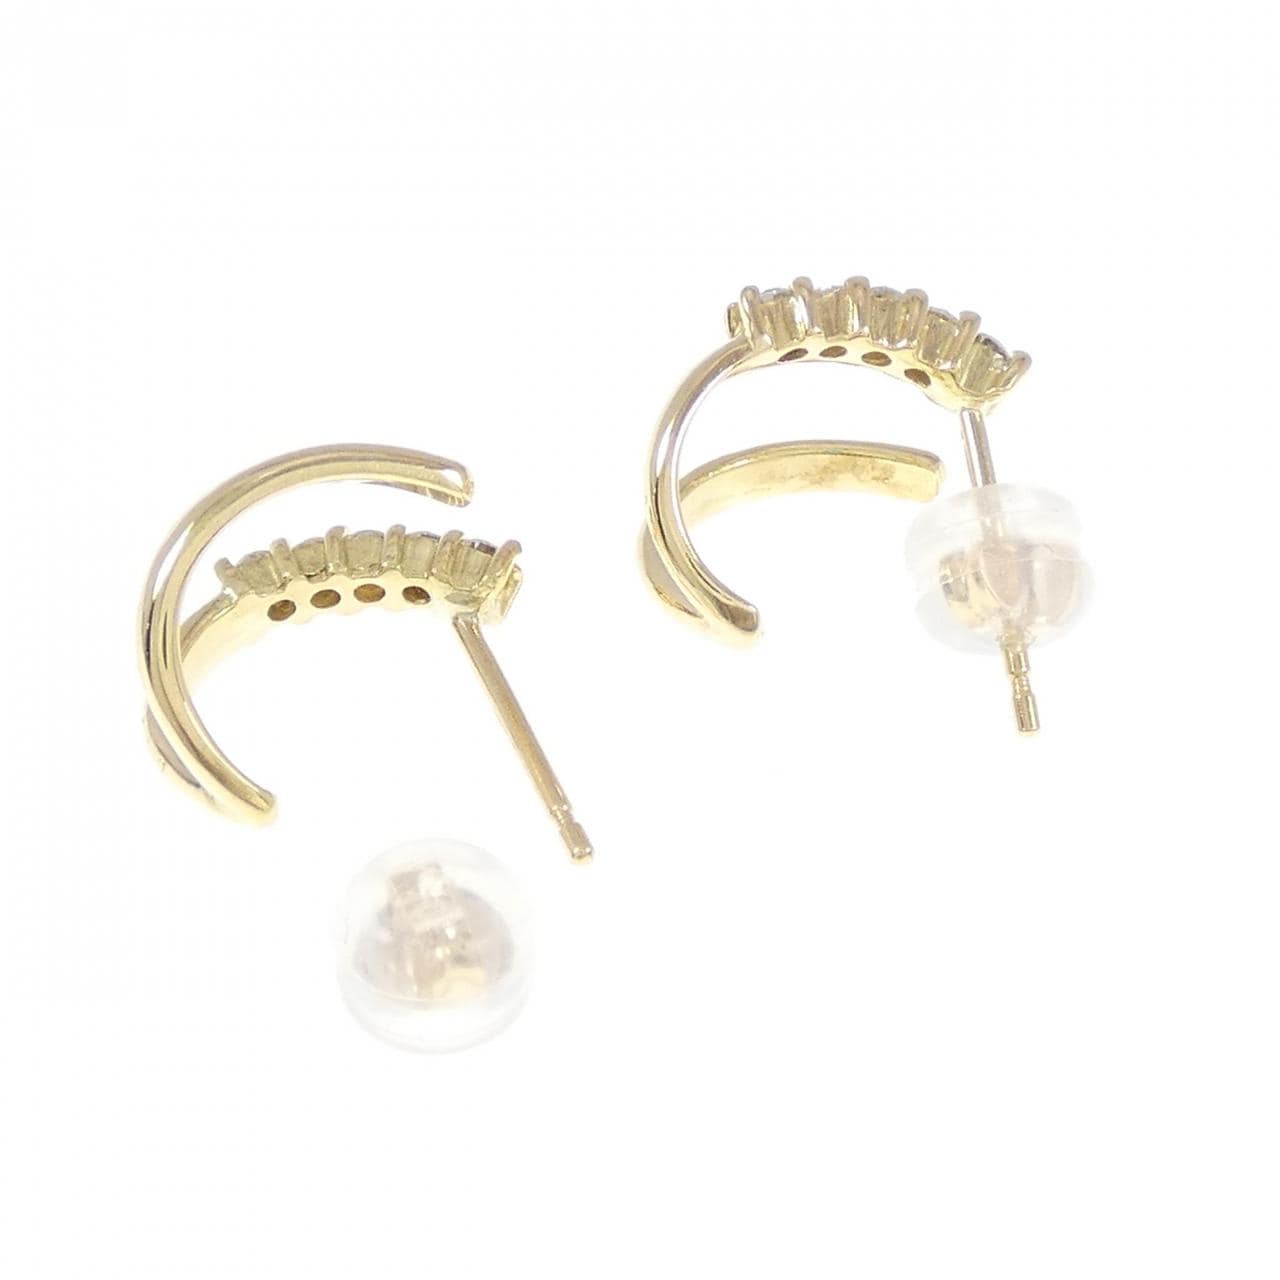 K18YG Diamond earrings 0.20CT